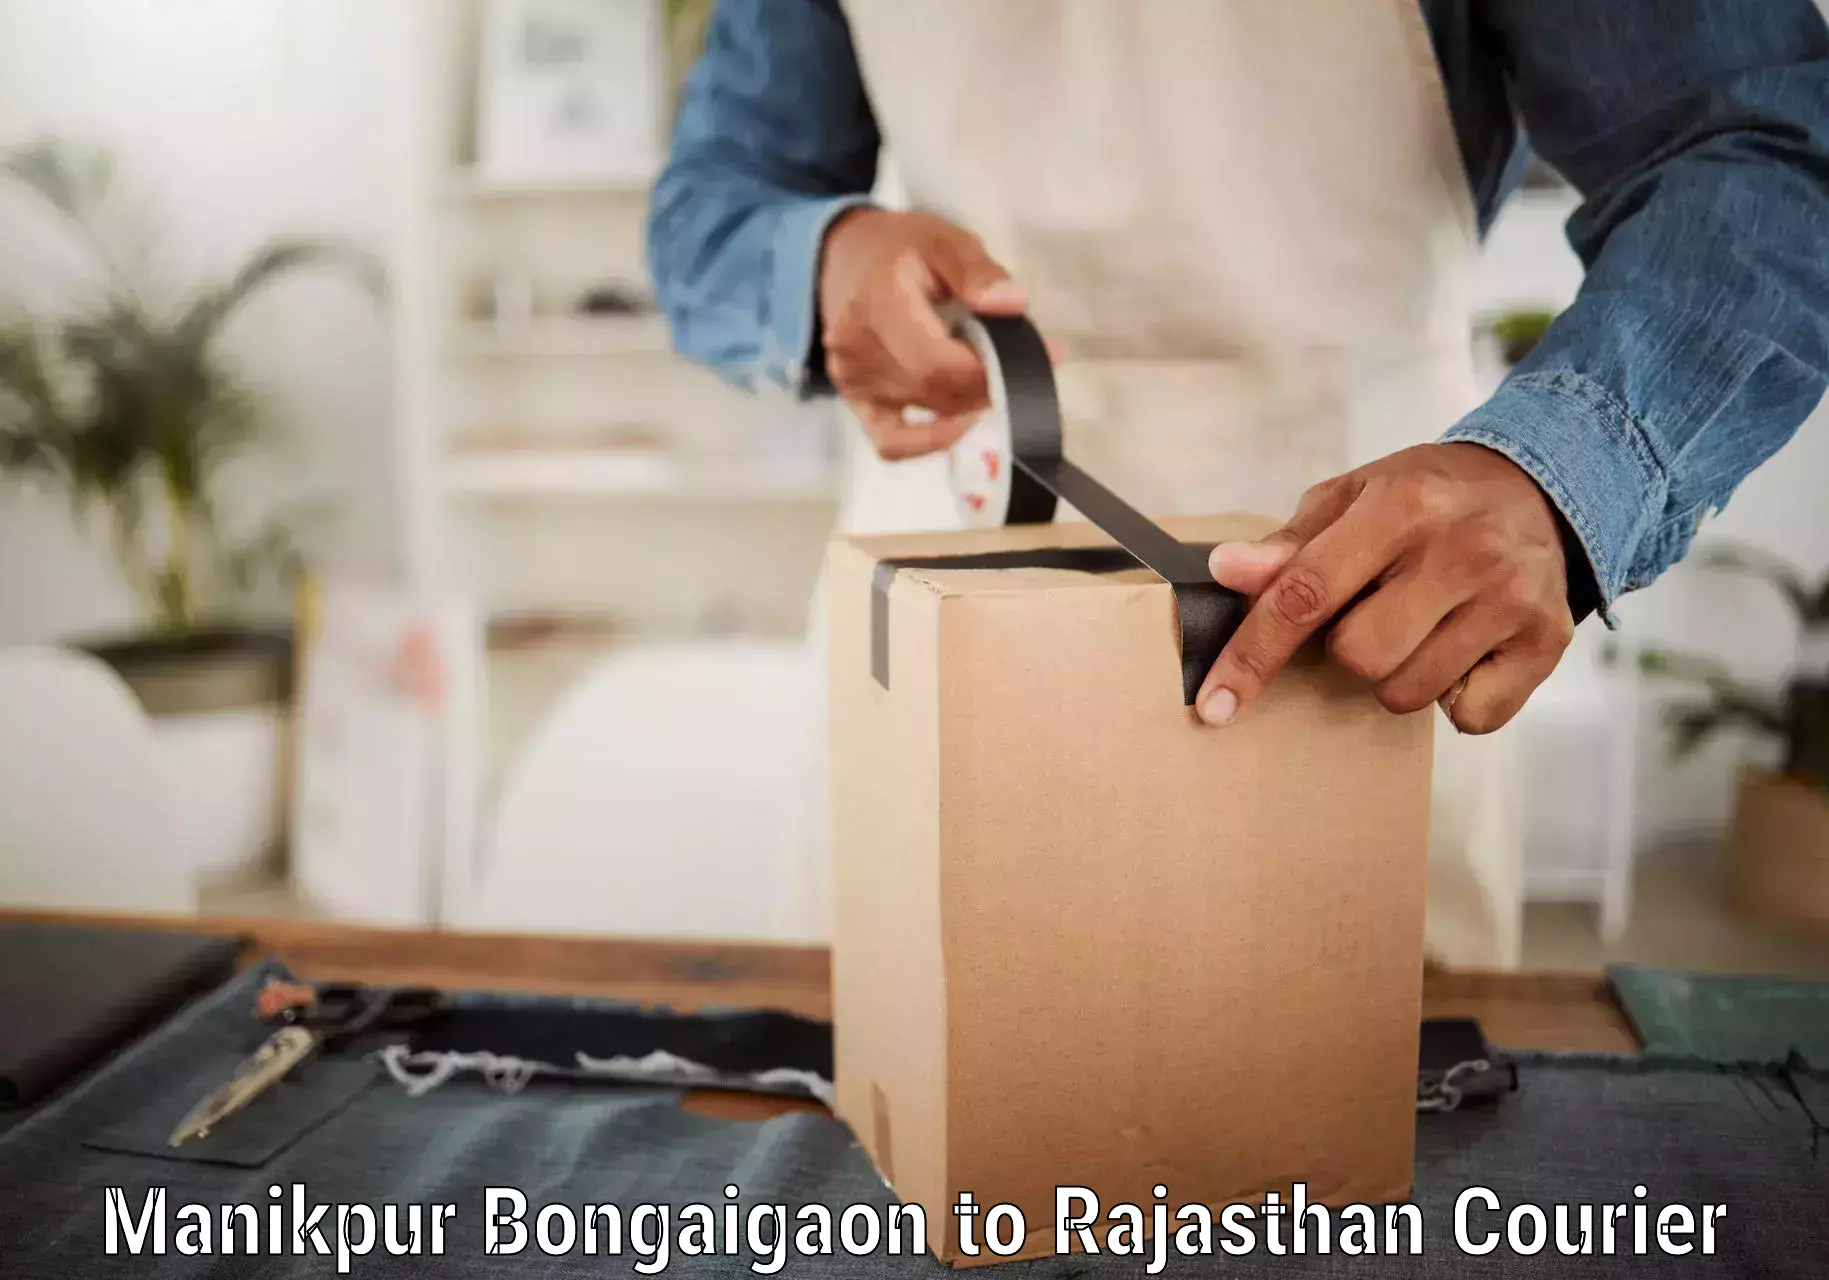 Professional parcel services Manikpur Bongaigaon to Pratapgarh Rajasthan